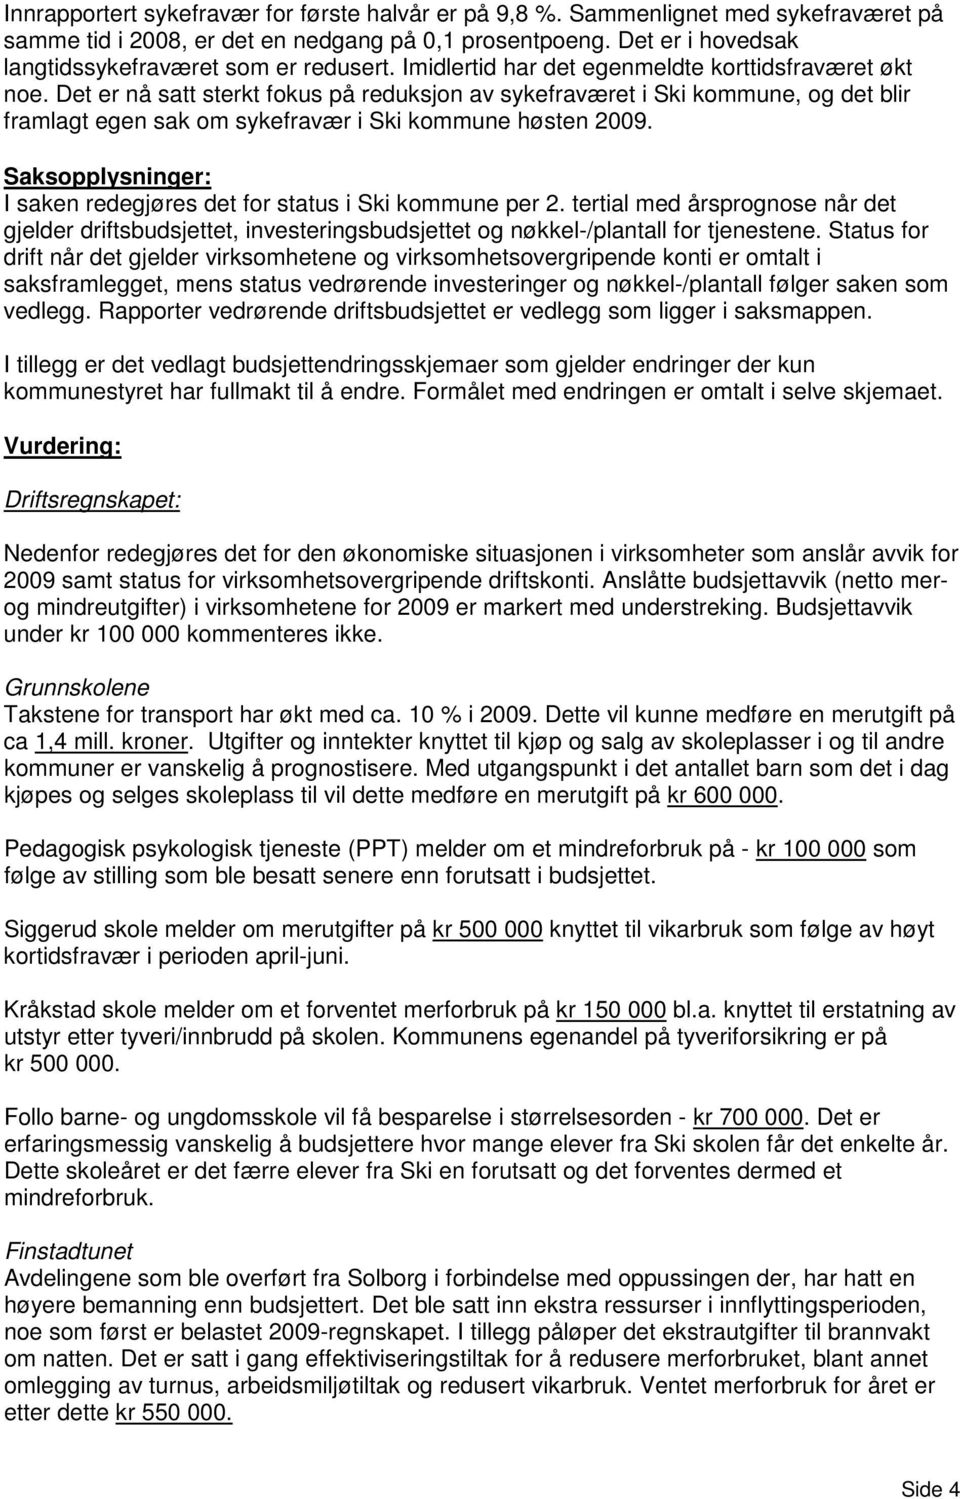 Det er nå satt sterkt fokus på reduksjon av sykefraværet i Ski kommune, og det blir framlagt egen sak om sykefravær i Ski kommune høsten 2009.